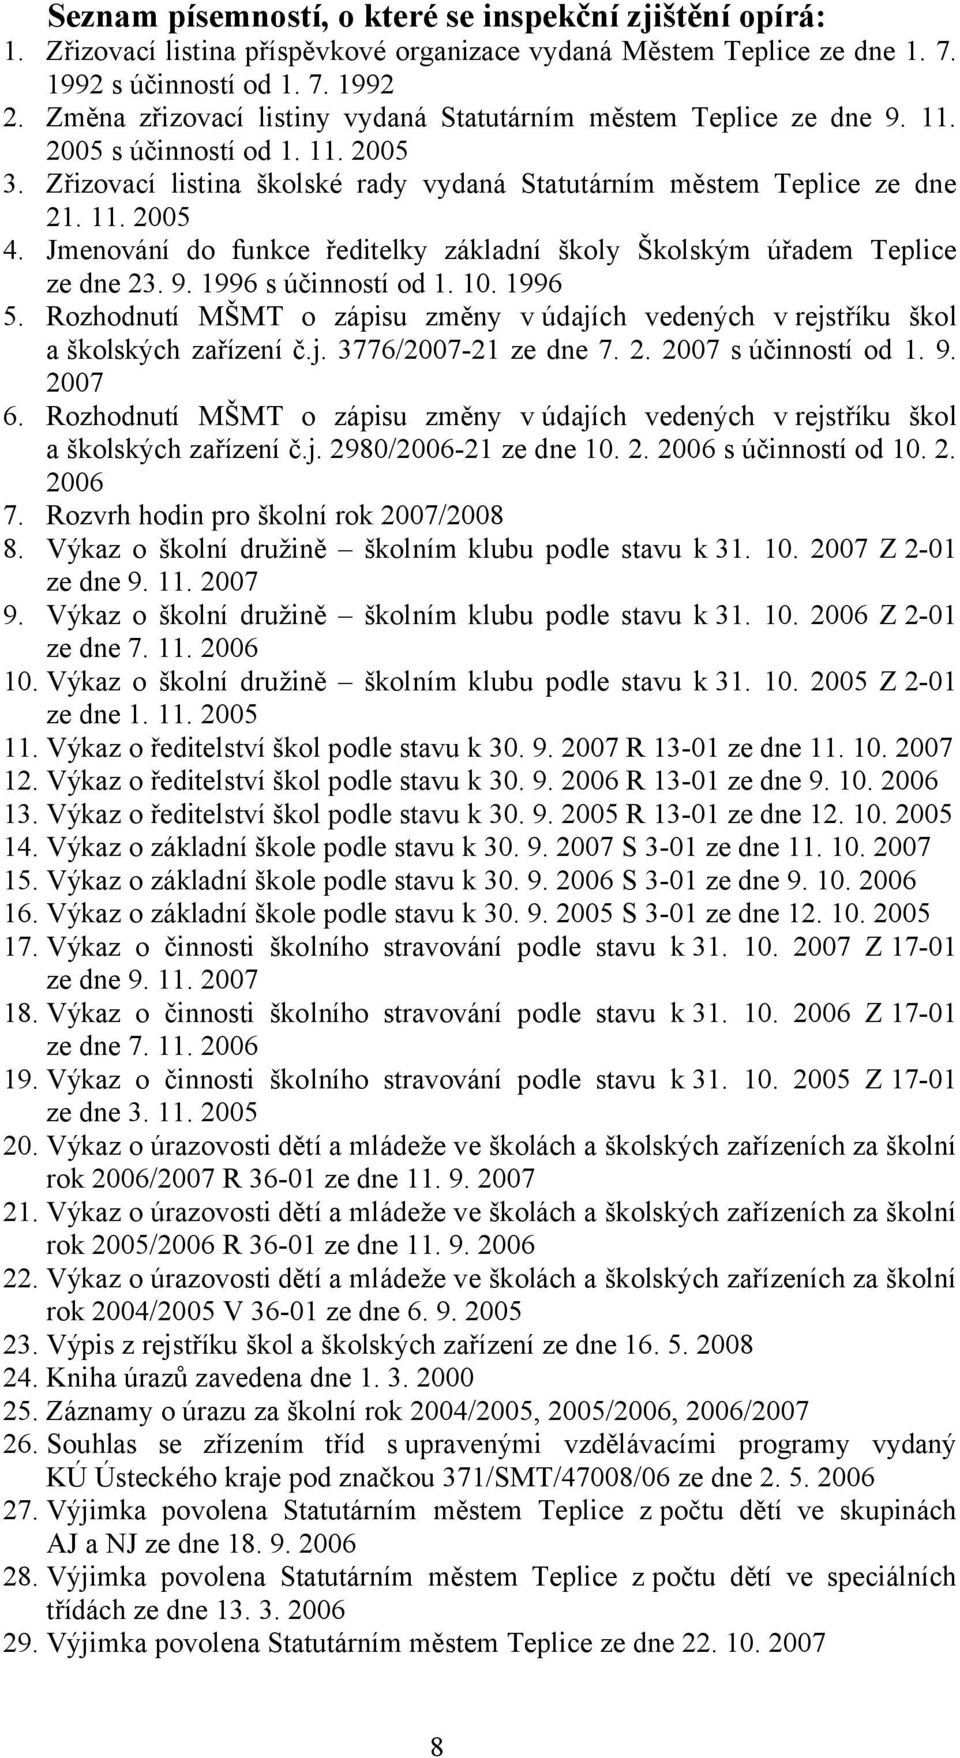 Jmenování do funkce ředitelky základní školy Školským úřadem Teplice ze dne 23. 9. 1996 s účinností od 1. 10. 1996 5.